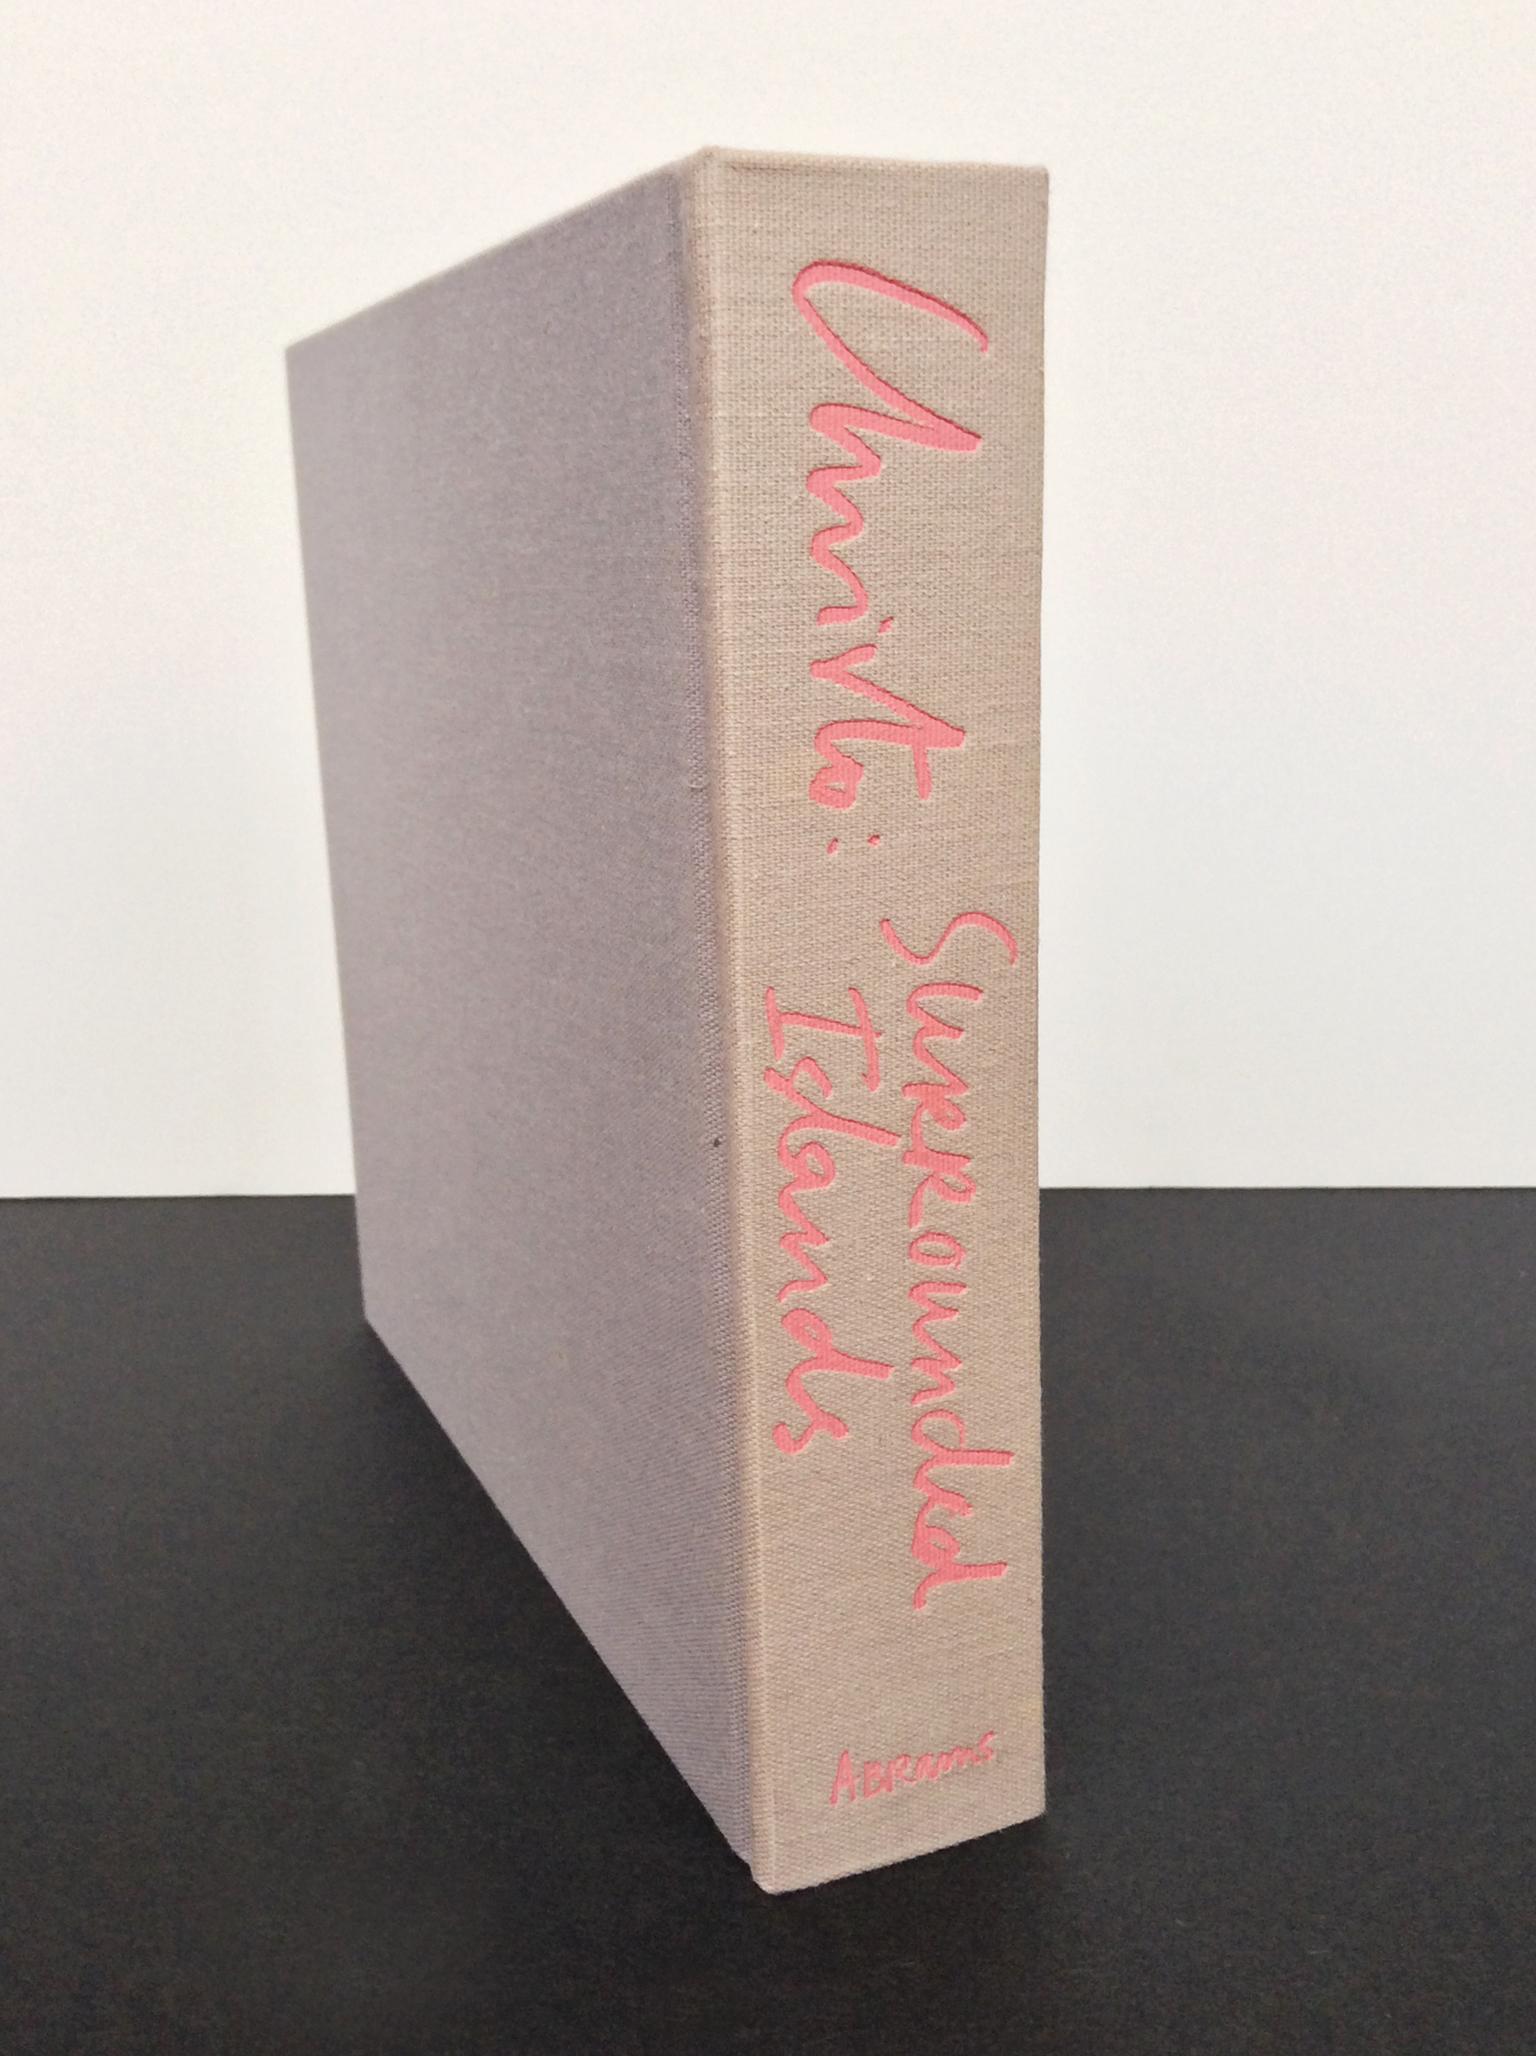 Christo & Jeanne-Claude Monograph 